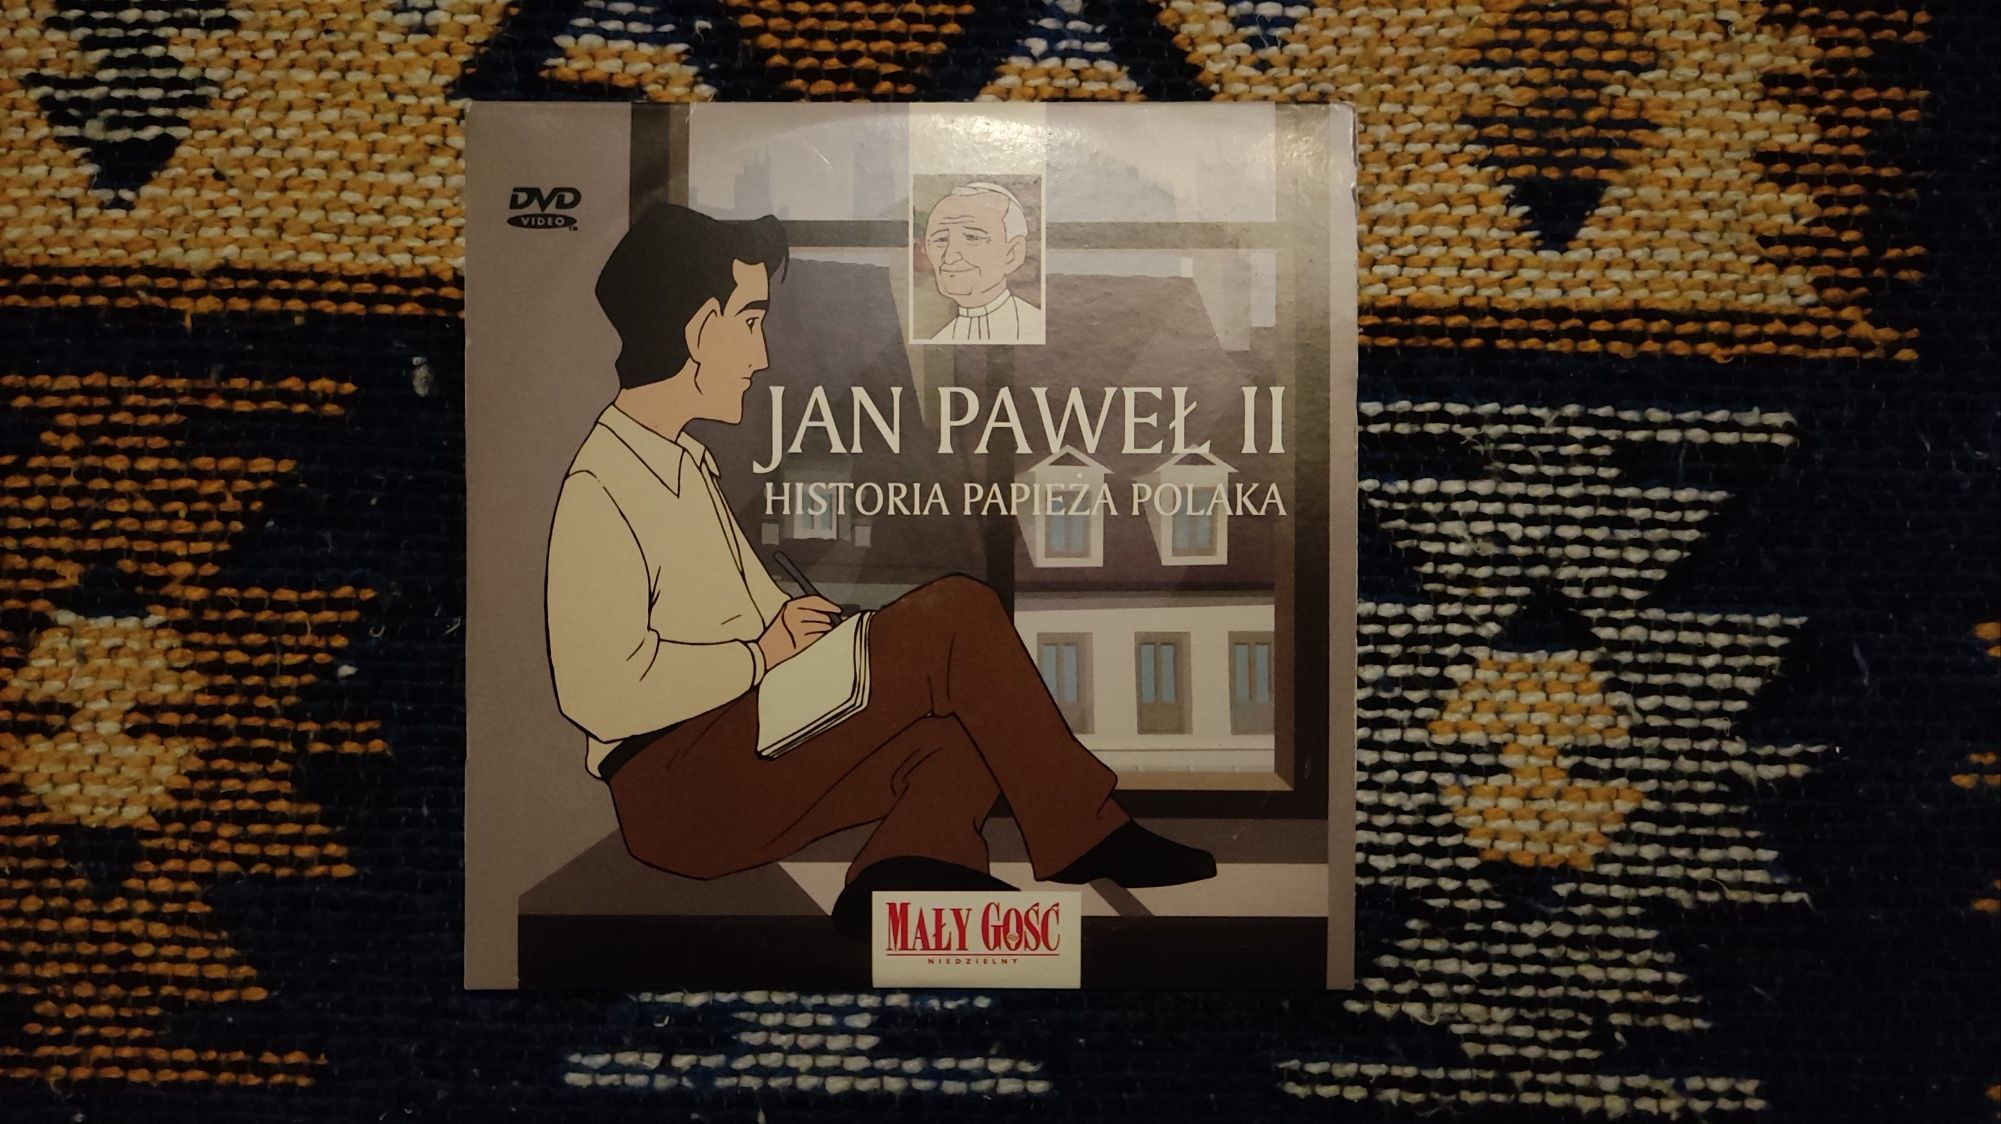 Płyta DVD "Jan Paweł II. Historia Papieża Polaka"